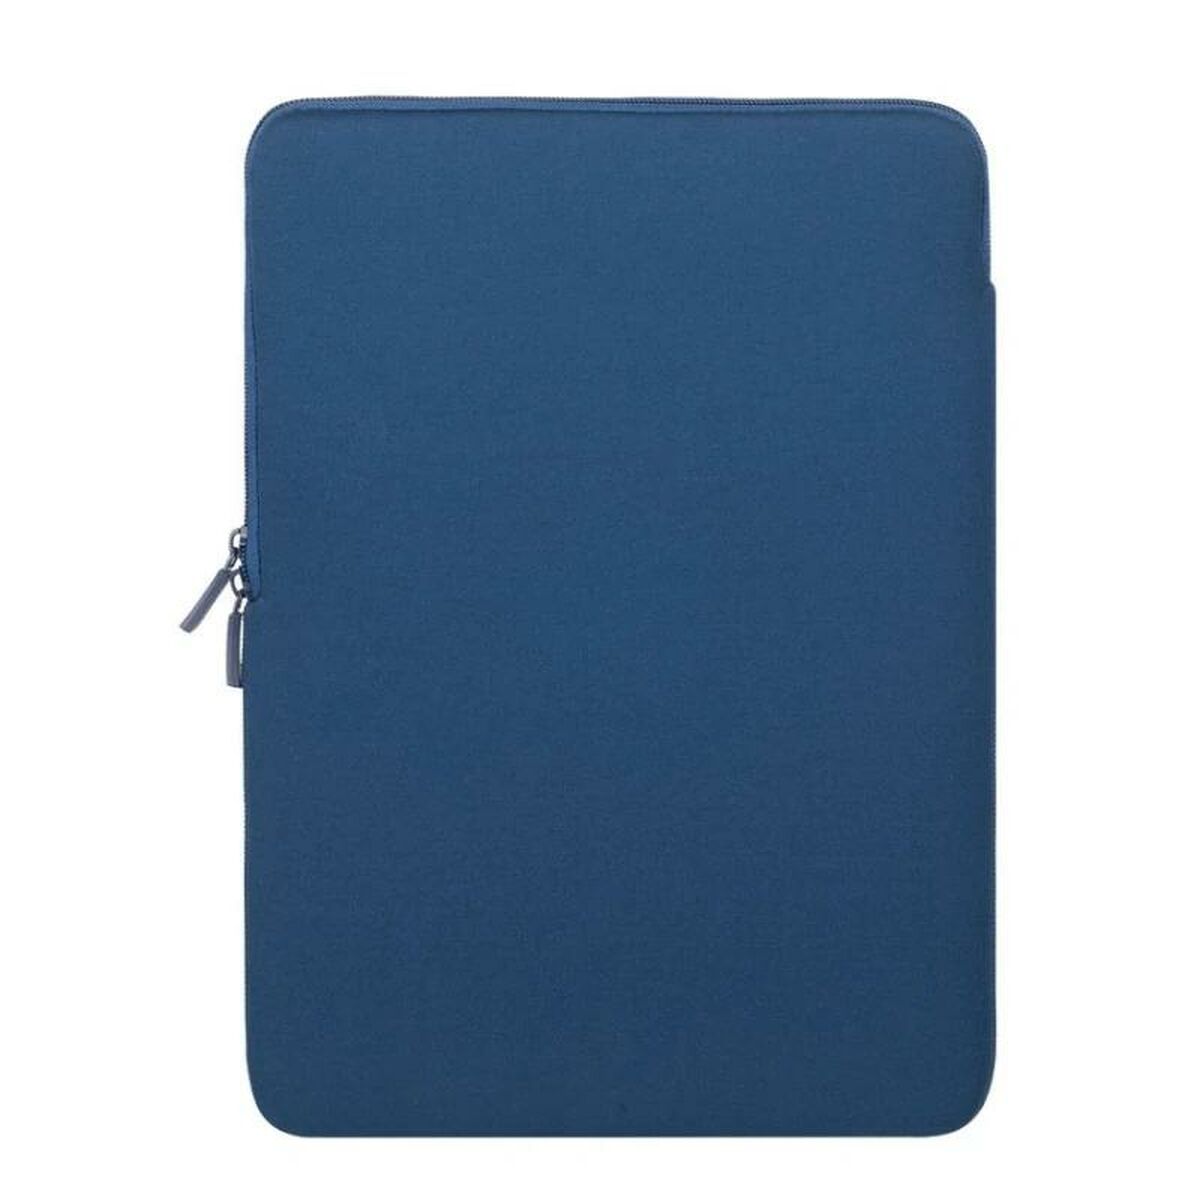 Rivacase ANTISHOCK Blaue 15,6-Zoll-Notebooktasche